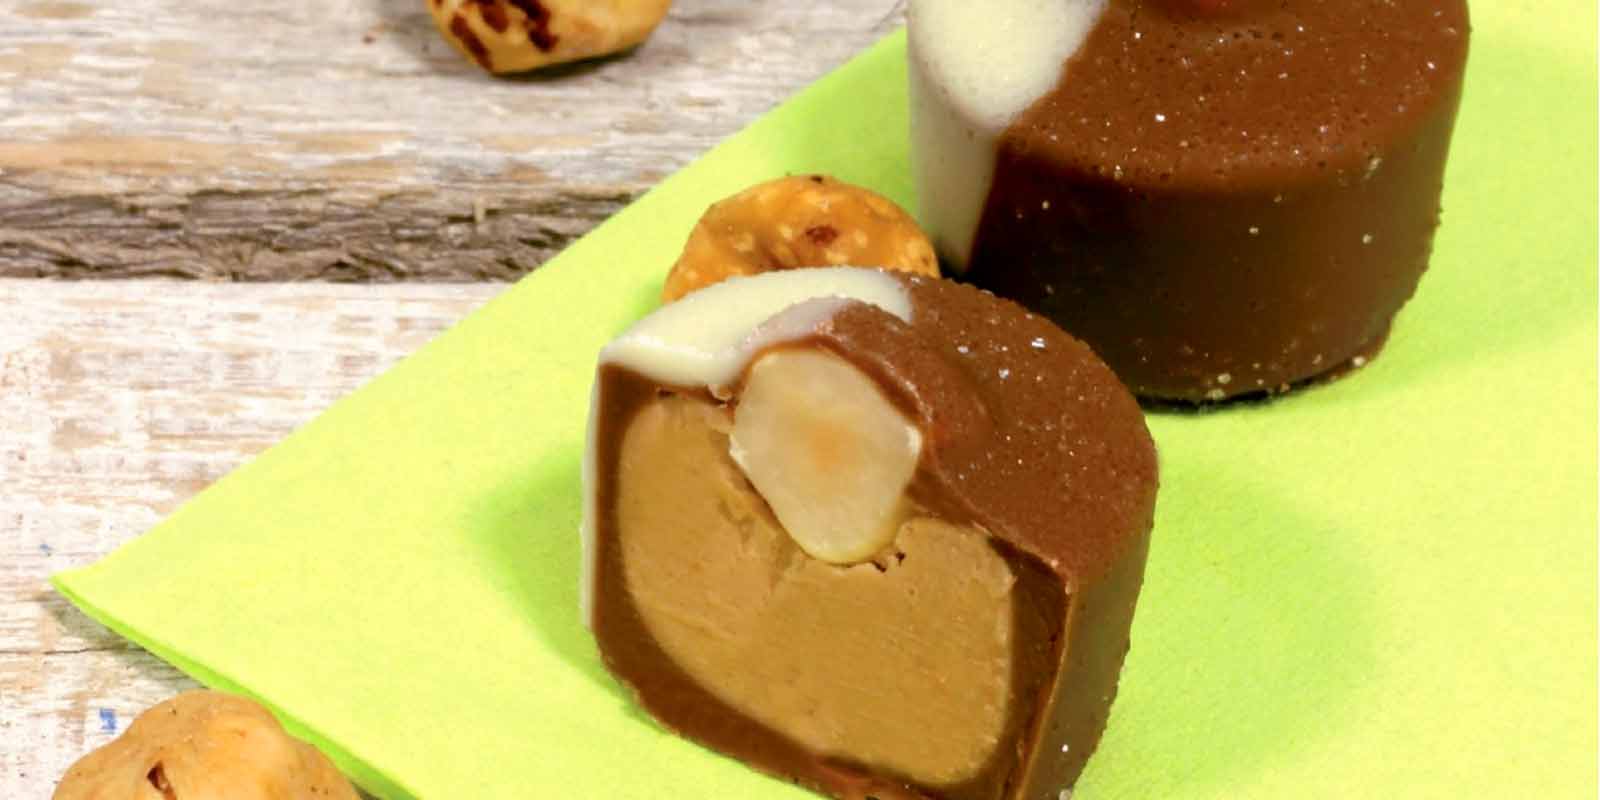 Coppeneur choklad Pralinchoklad
Hjartat i varje pralinchoklad ar fyllningen - forsiktigt tackt av utvalda overdrag. De lovande, ibland ovanliga sammansattningarna av ingredienserna, som ibland ar arrangerade i ett eller tva lager, ar grunden for smakverk.